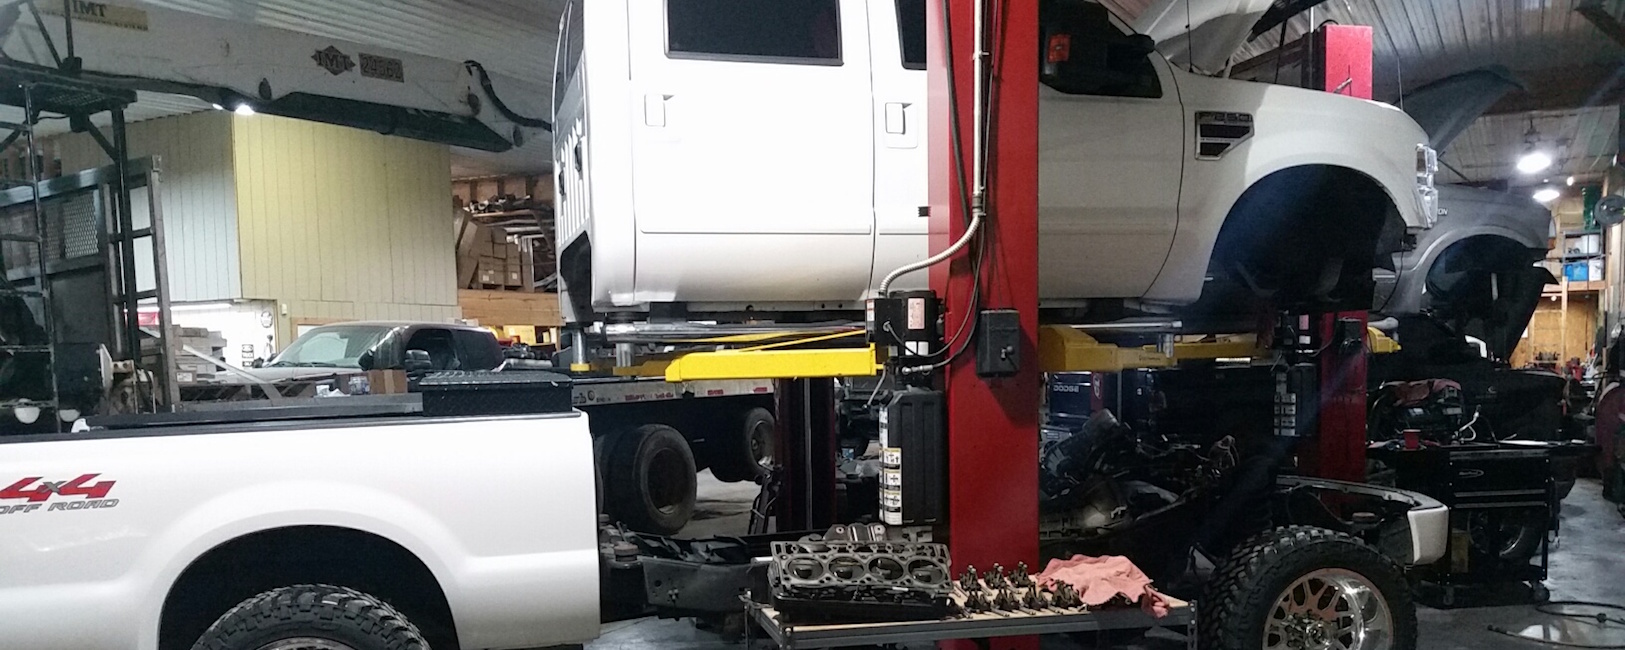 Diesel Repair Services In Kentucky